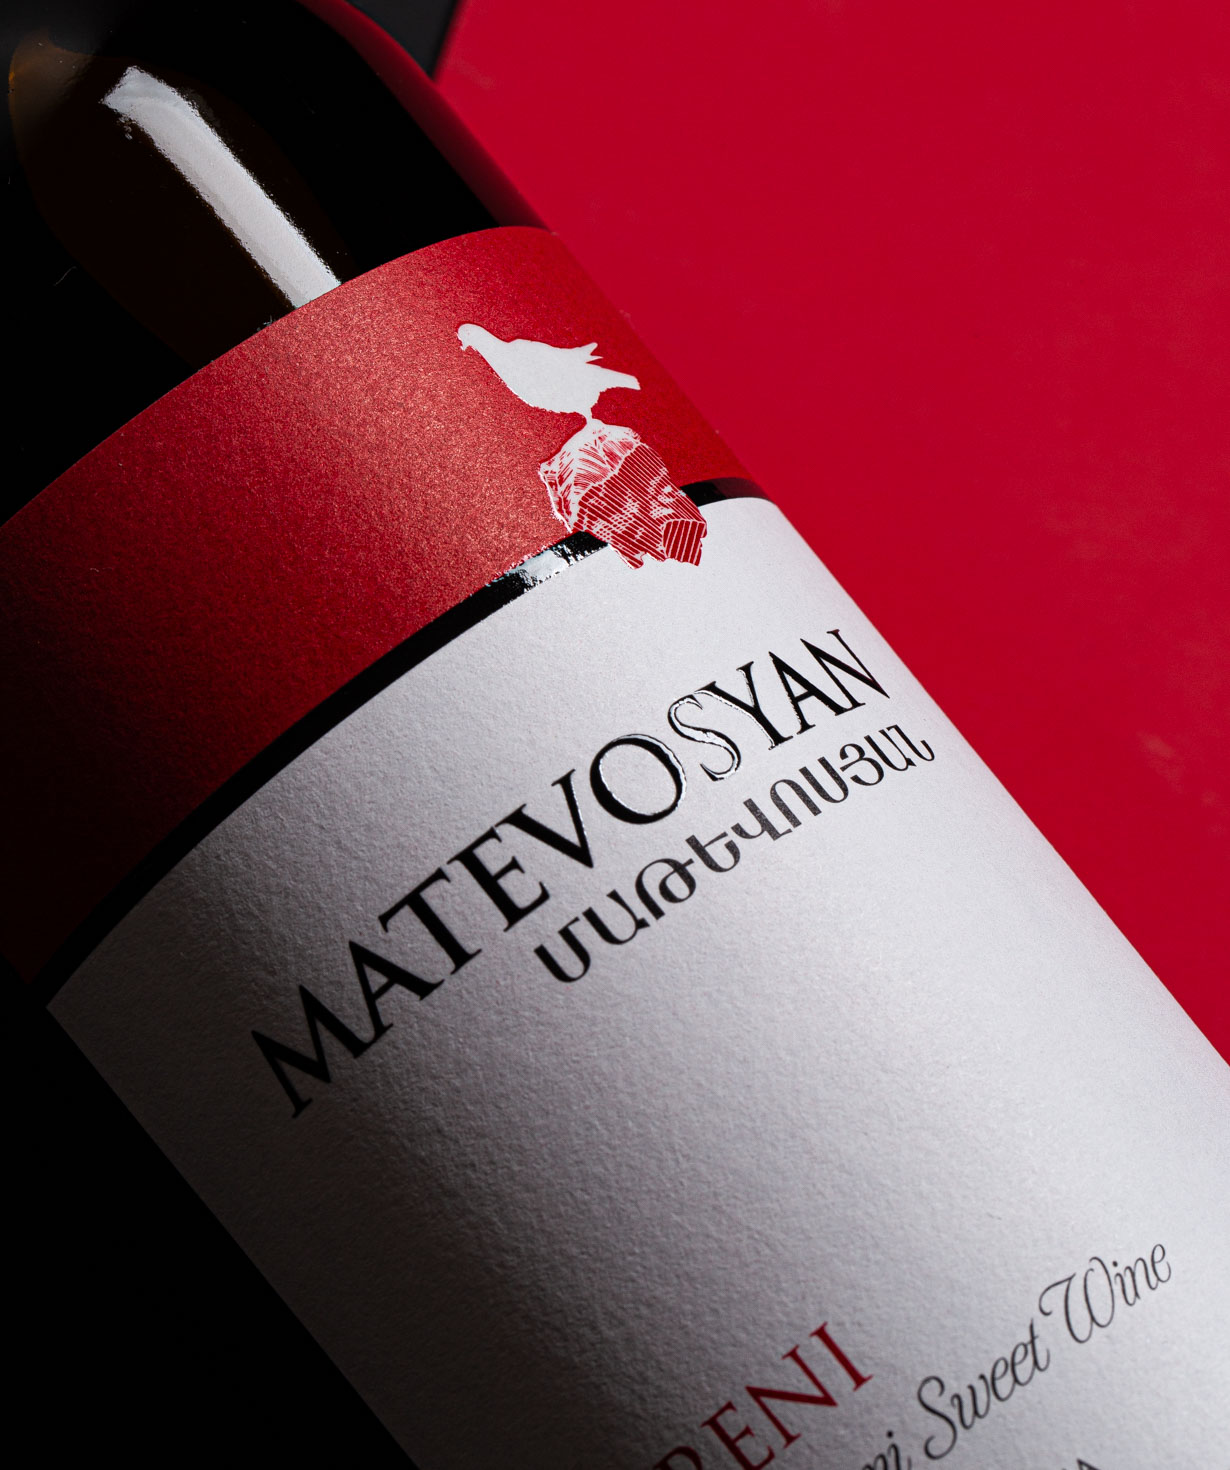 Wine «Matevosyan» Areni, red, semi-sweet, 9%, 750 ml